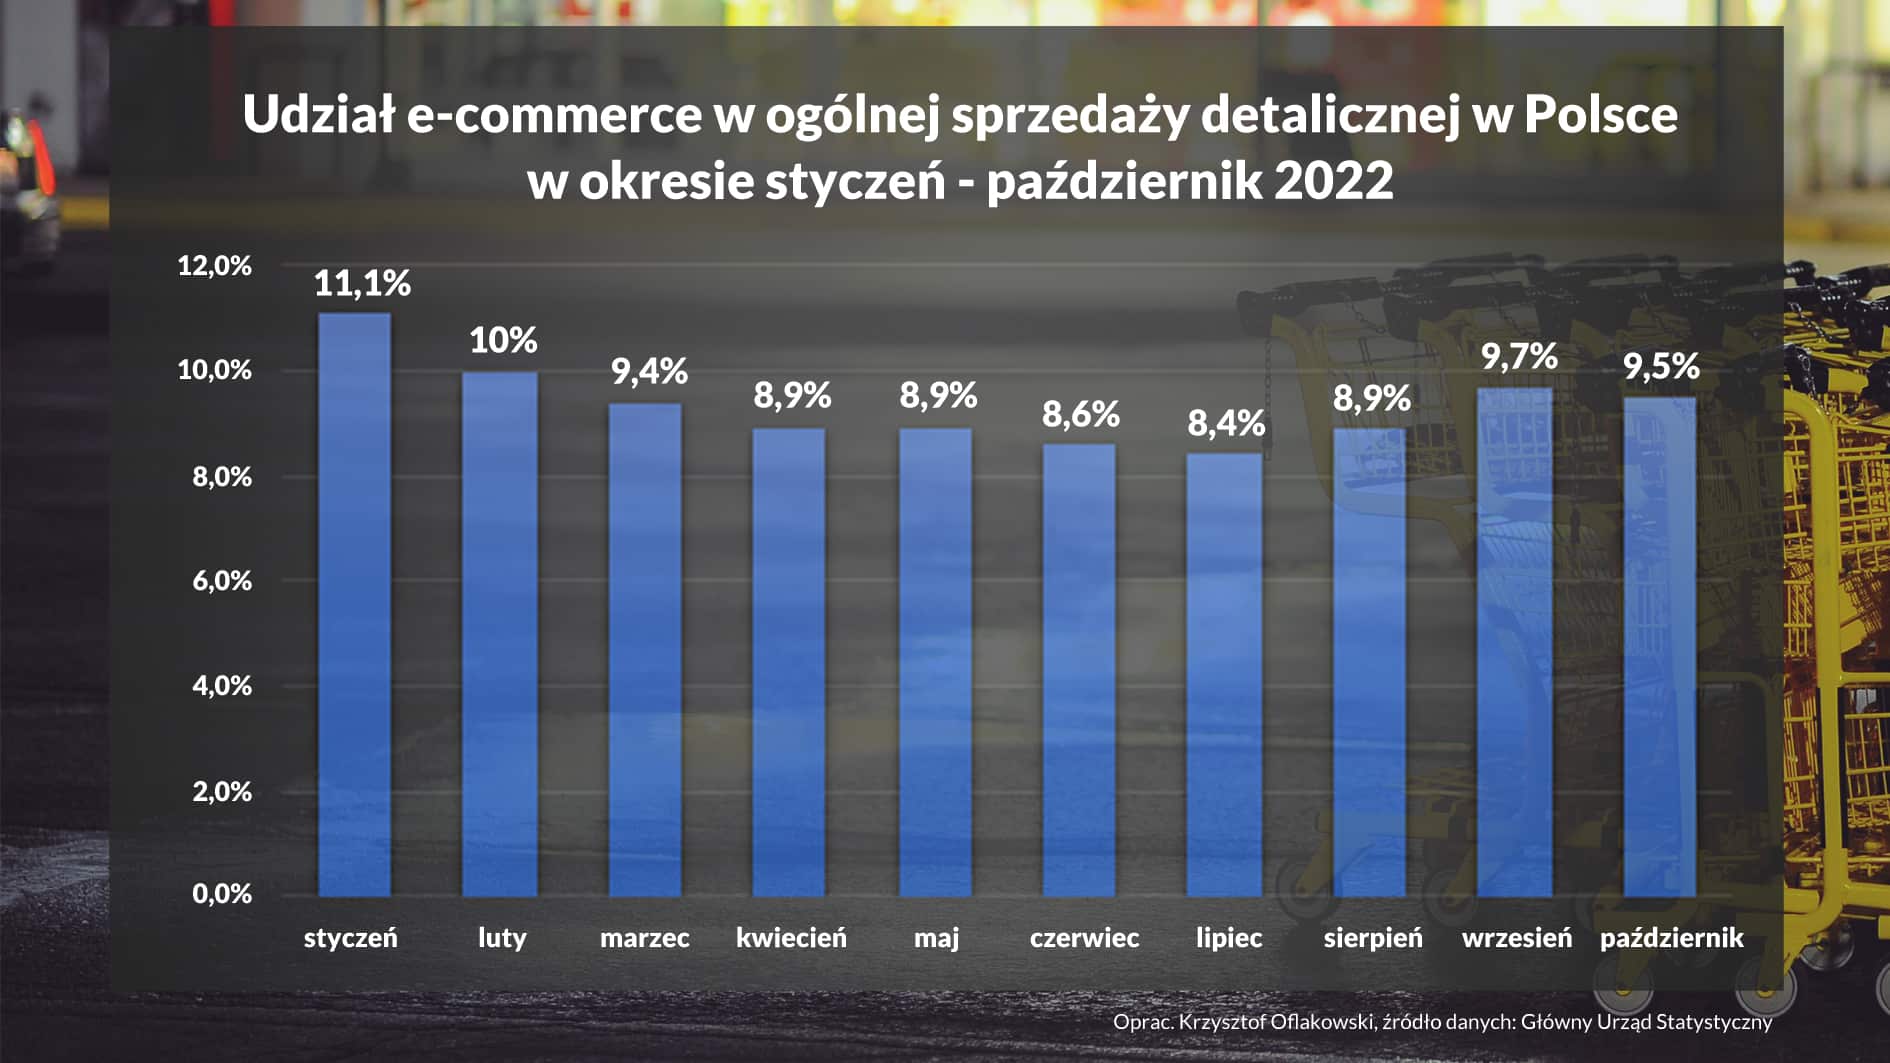 Udział e-commerce w ogólnej sprzedaży detalicznej w Polsce w okresie styczeń - październik 2022